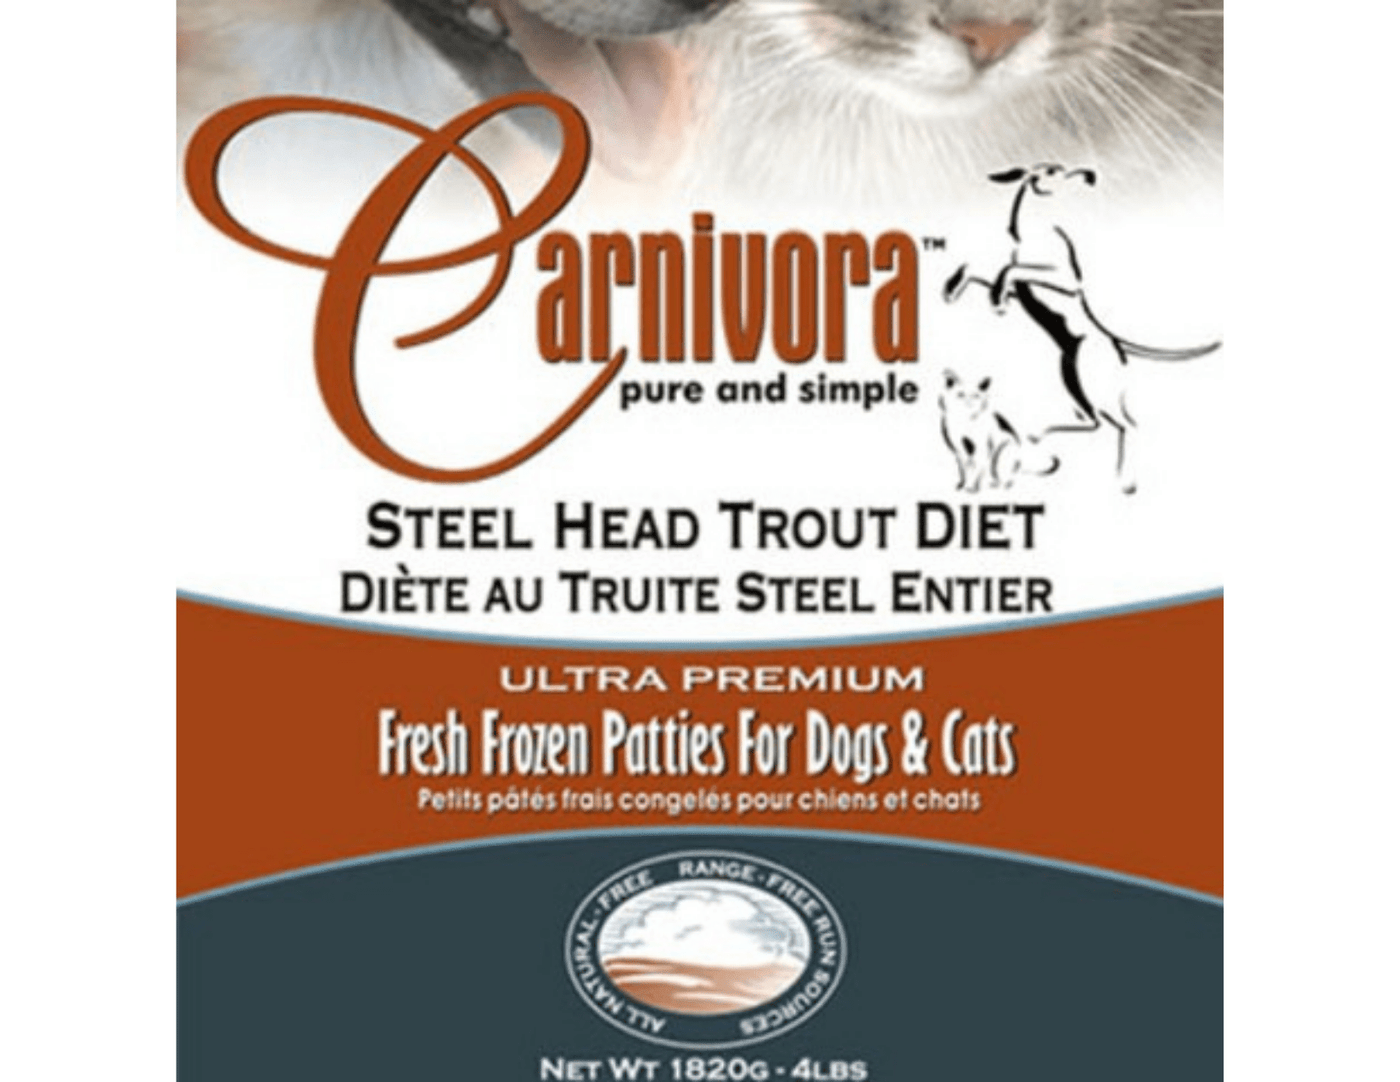 Carnivora Steelhead Trout Diet - PetToba-Carnivora